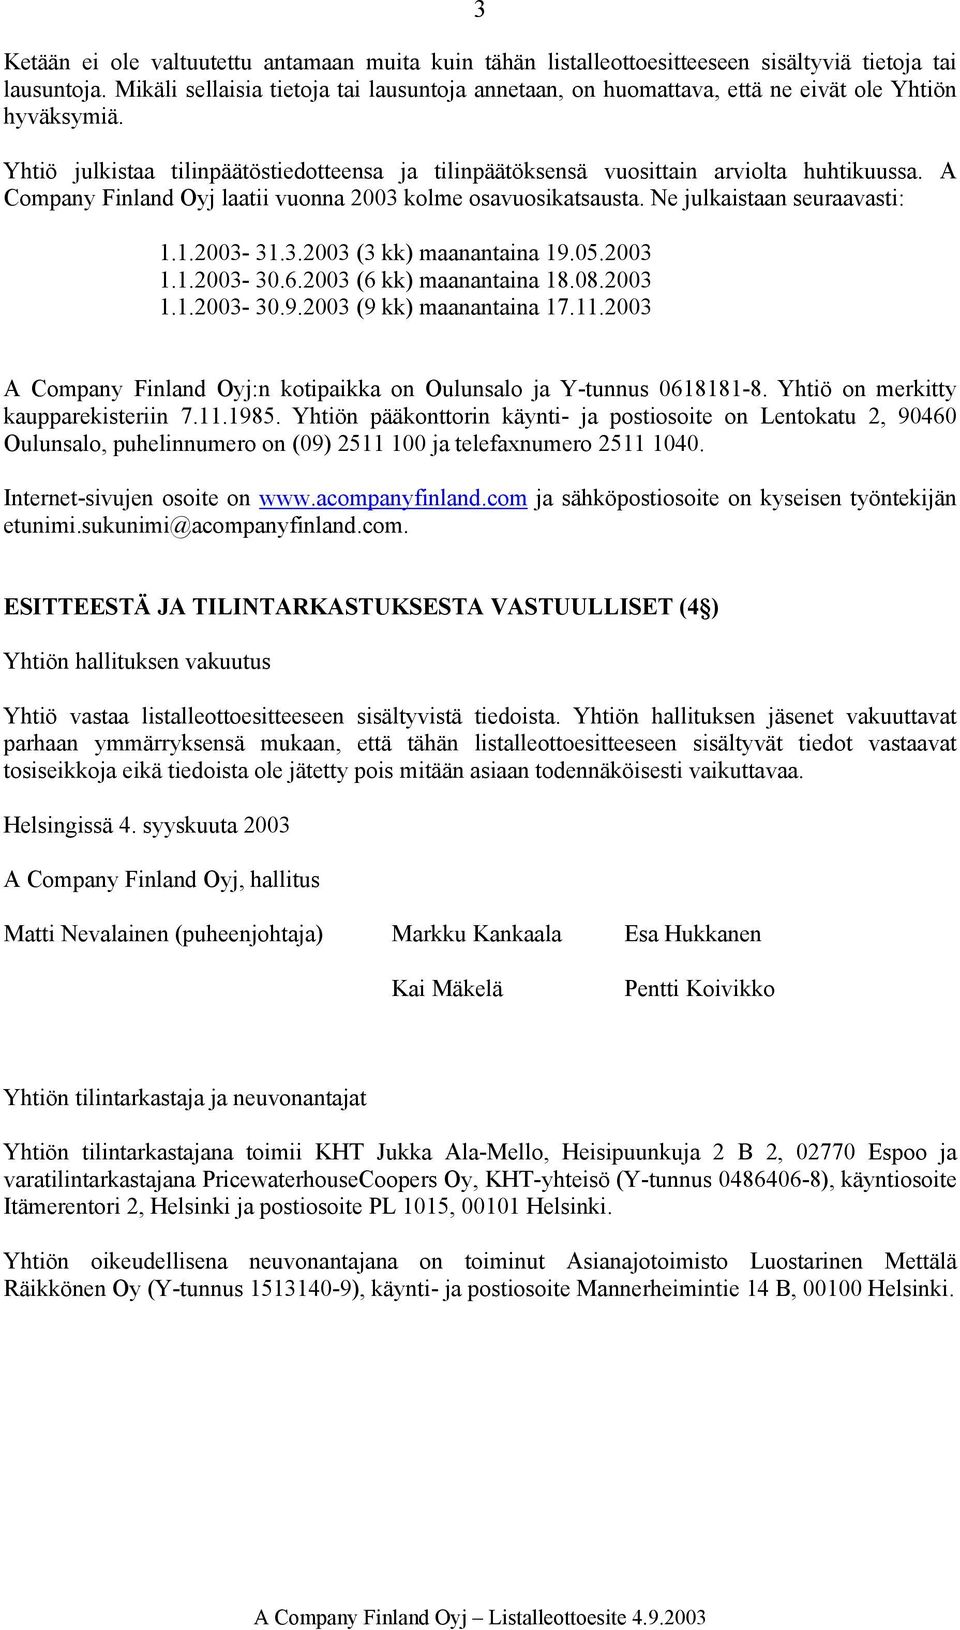 A Company Finland Oyj laatii vuonna 2003 kolme osavuosikatsausta. Ne julkaistaan seuraavasti: 1.1.2003-31.3.2003 (3 kk) maanantaina 19.05.2003 1.1.2003-30.6.2003 (6 kk) maanantaina 18.08.2003 1.1.2003-30.9.2003 (9 kk) maanantaina 17.